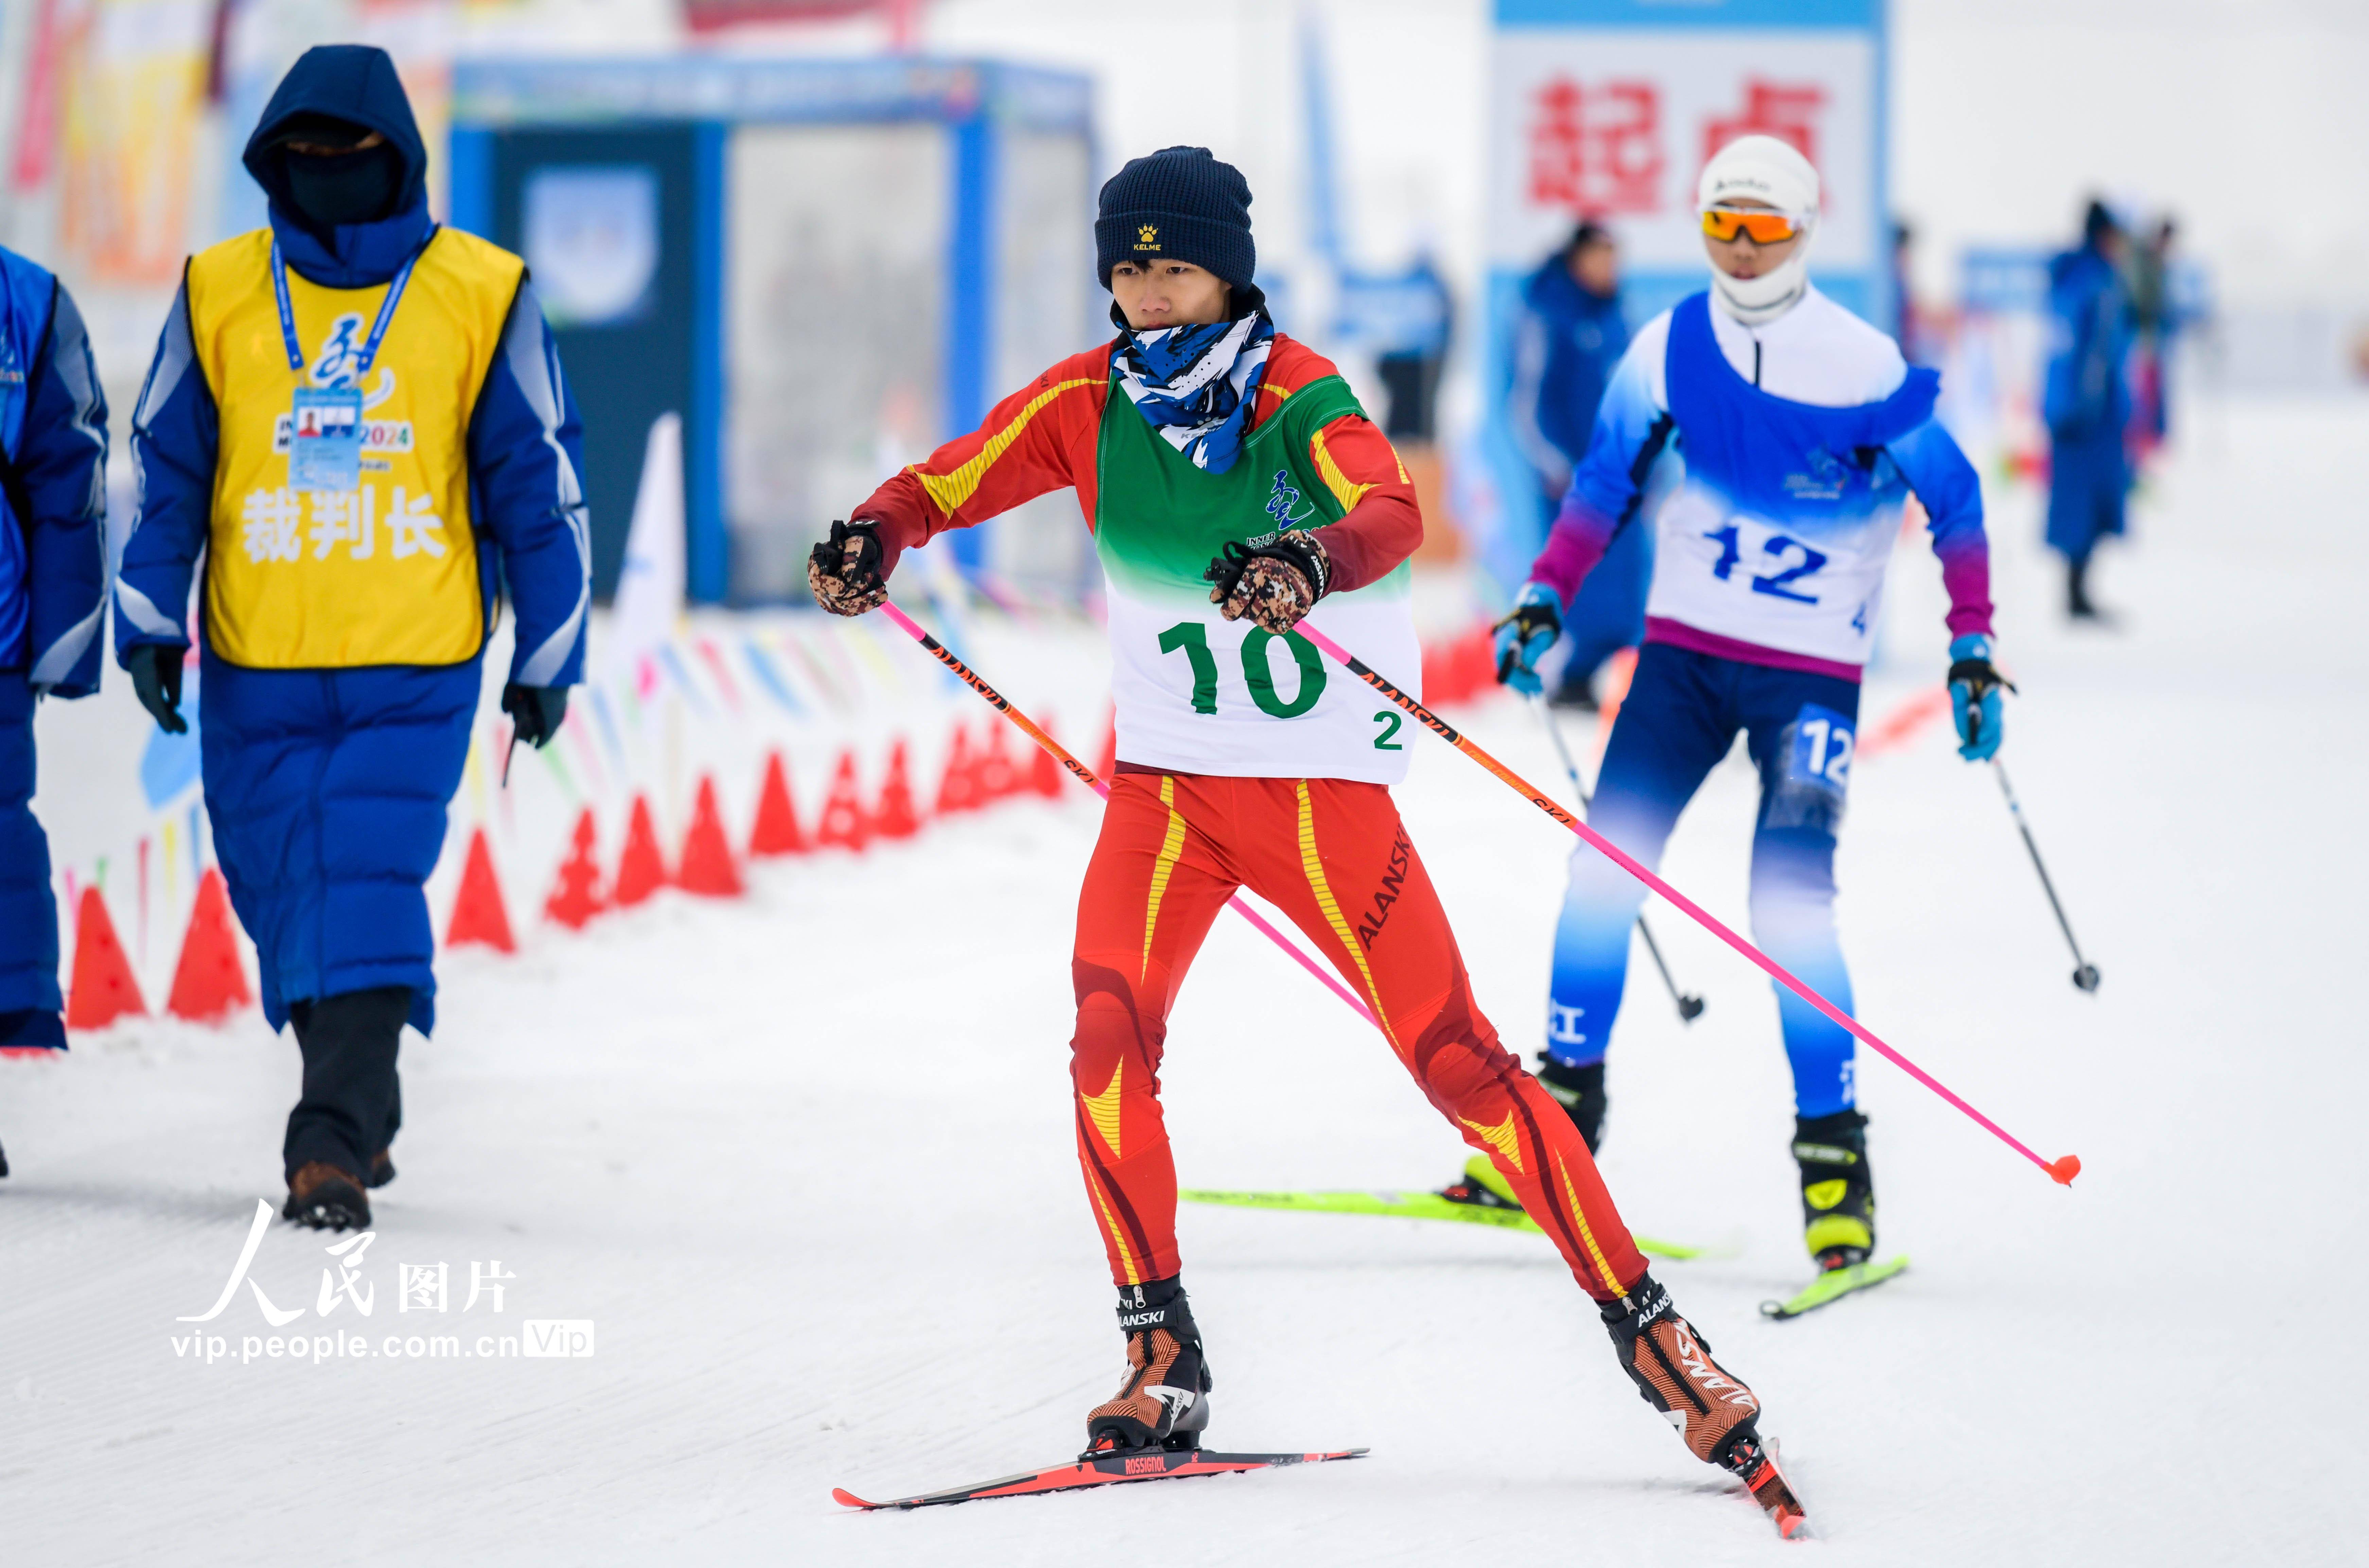 内蒙古呼和浩特:第十四届全国冬季运动会群众比赛开赛